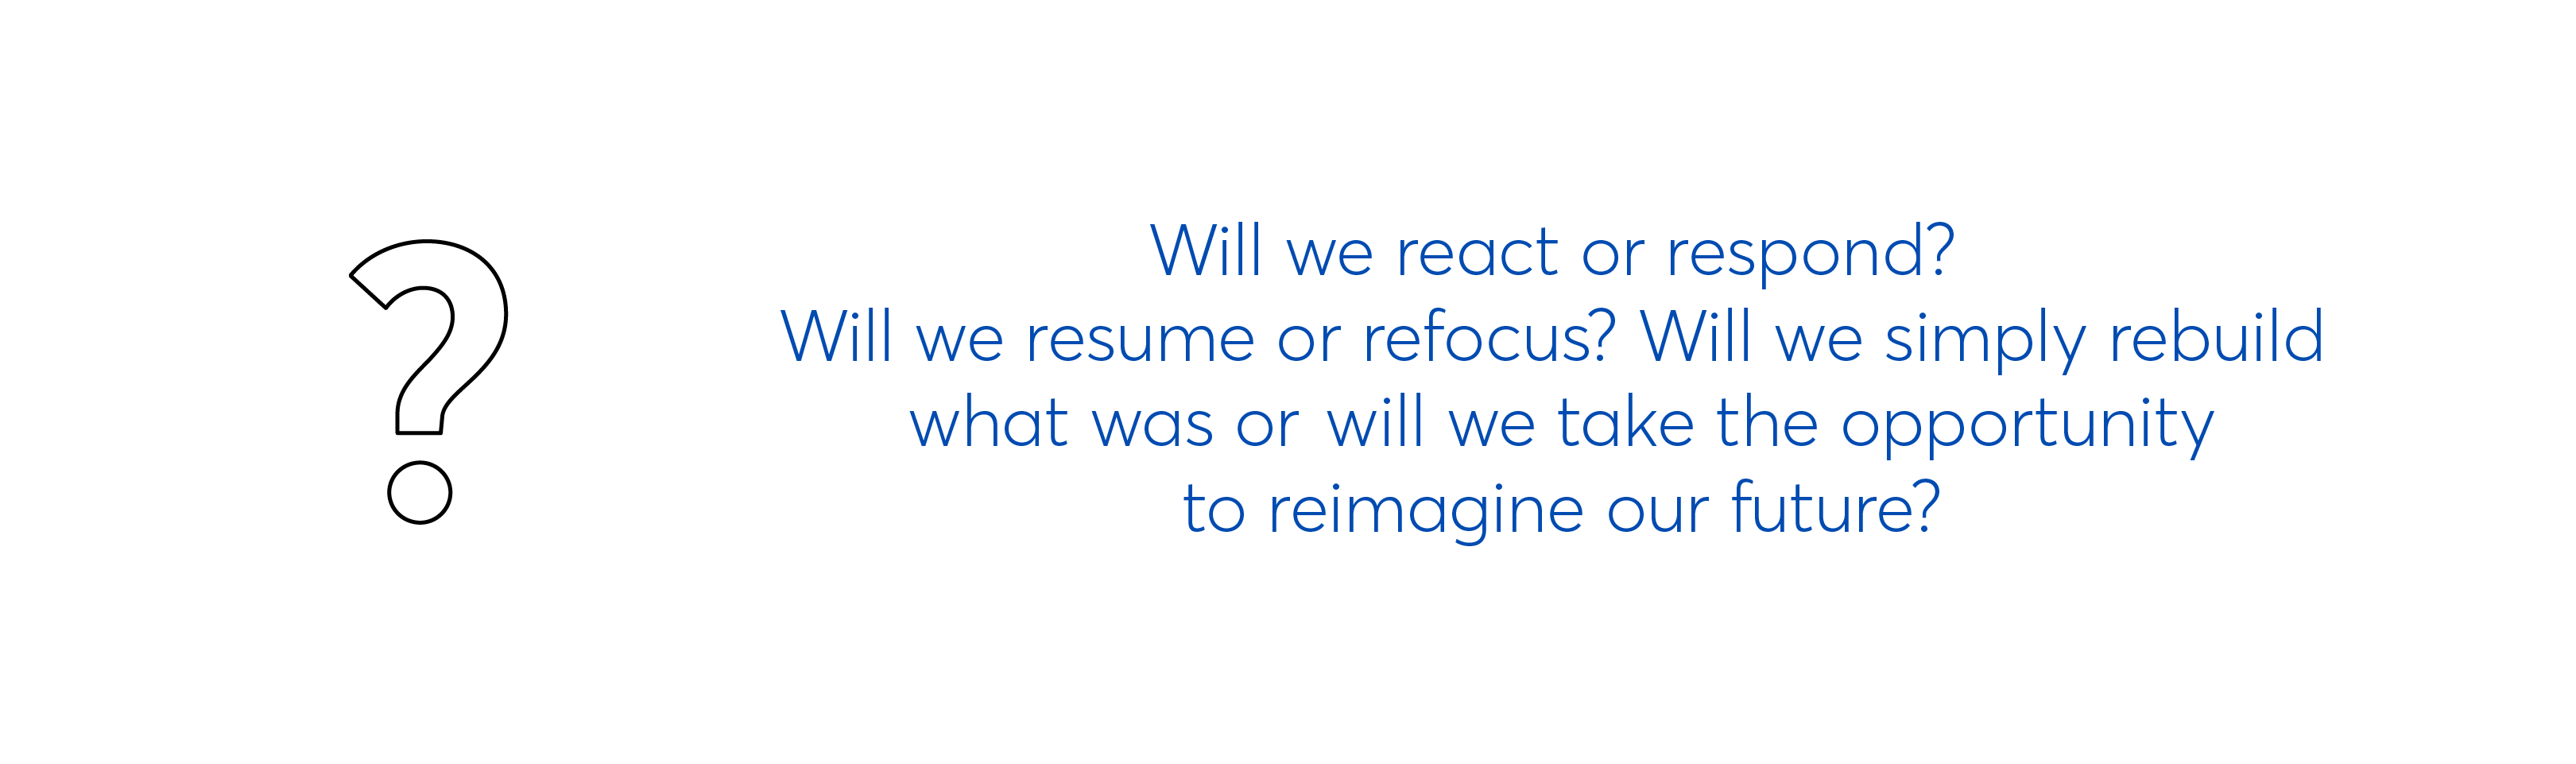 React, respond, resume, refocus, rebuild, reimagine in education